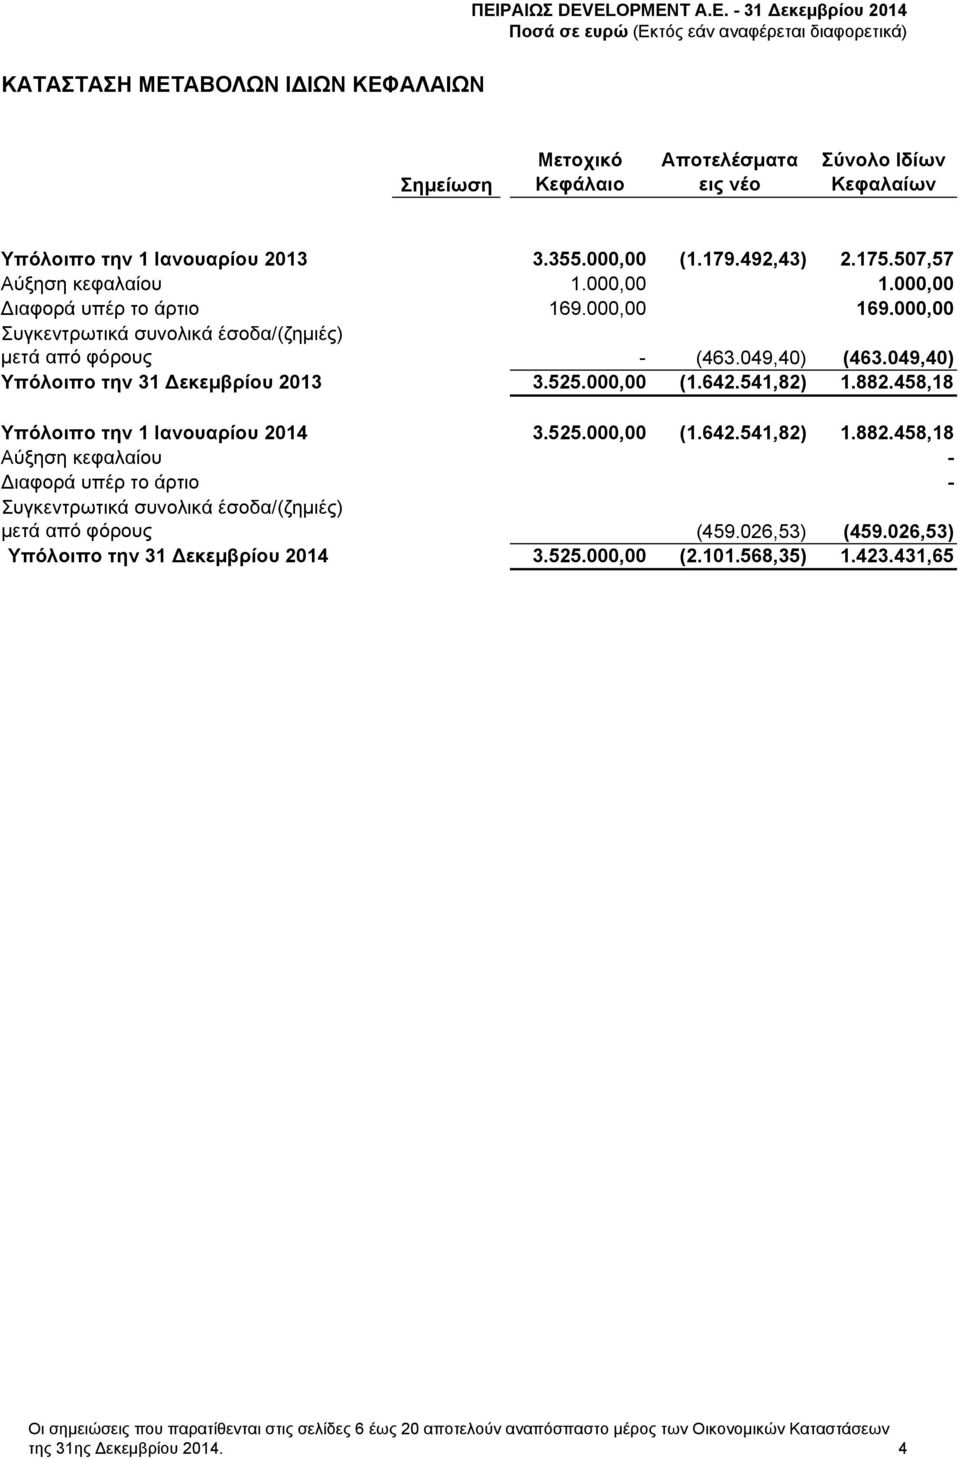 541,82) 1.882.458,18 Υπόλοιπο την 1 Ιανουαρίου 2014 3.525.000,00 (1.642.541,82) 1.882.458,18 Αύξηση κεφαλαίου - ιαφορά υπέρ το άρτιο - Συγκεντρωτικά συνολικά έσοδα/(ζημιές) μετά από φόρους (459.